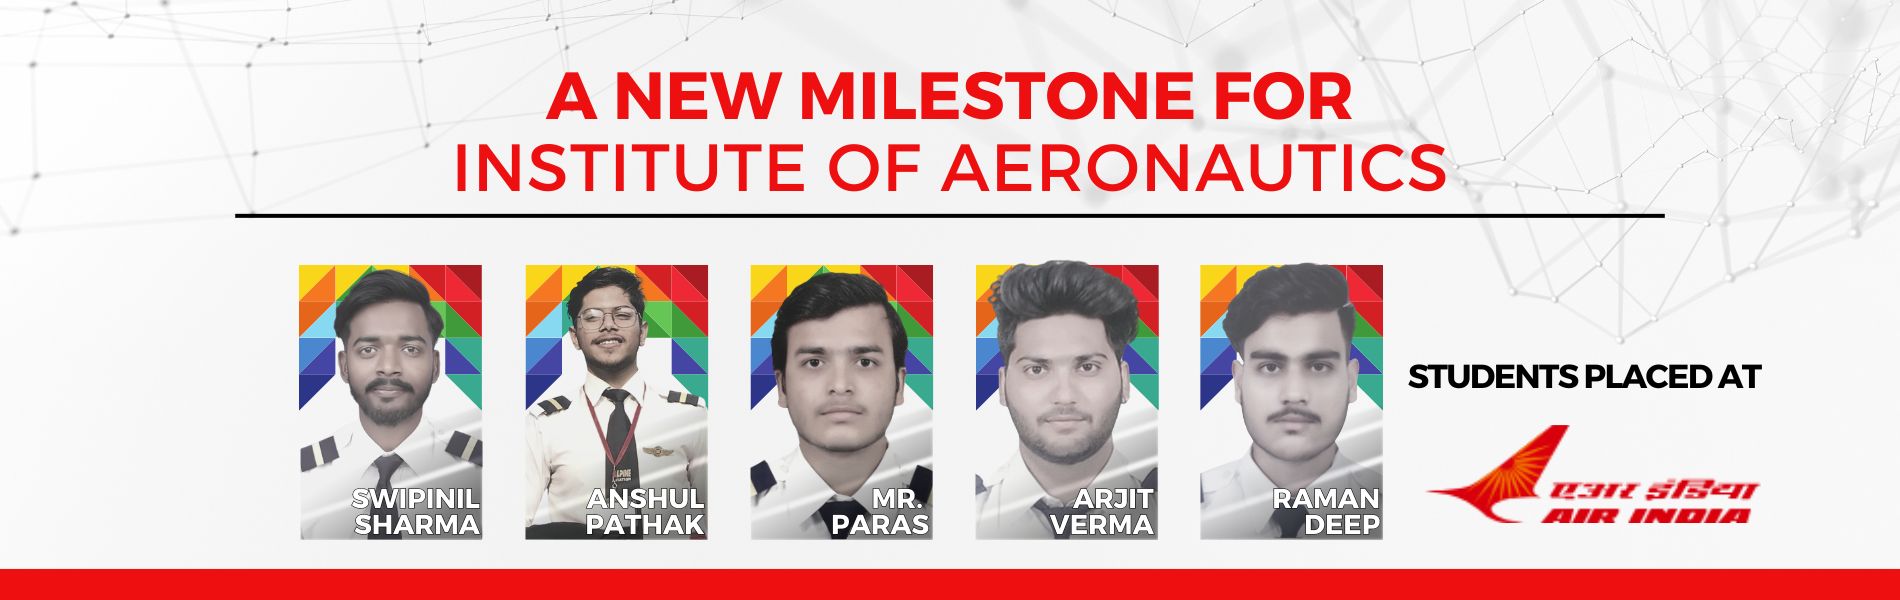 Air India Banner